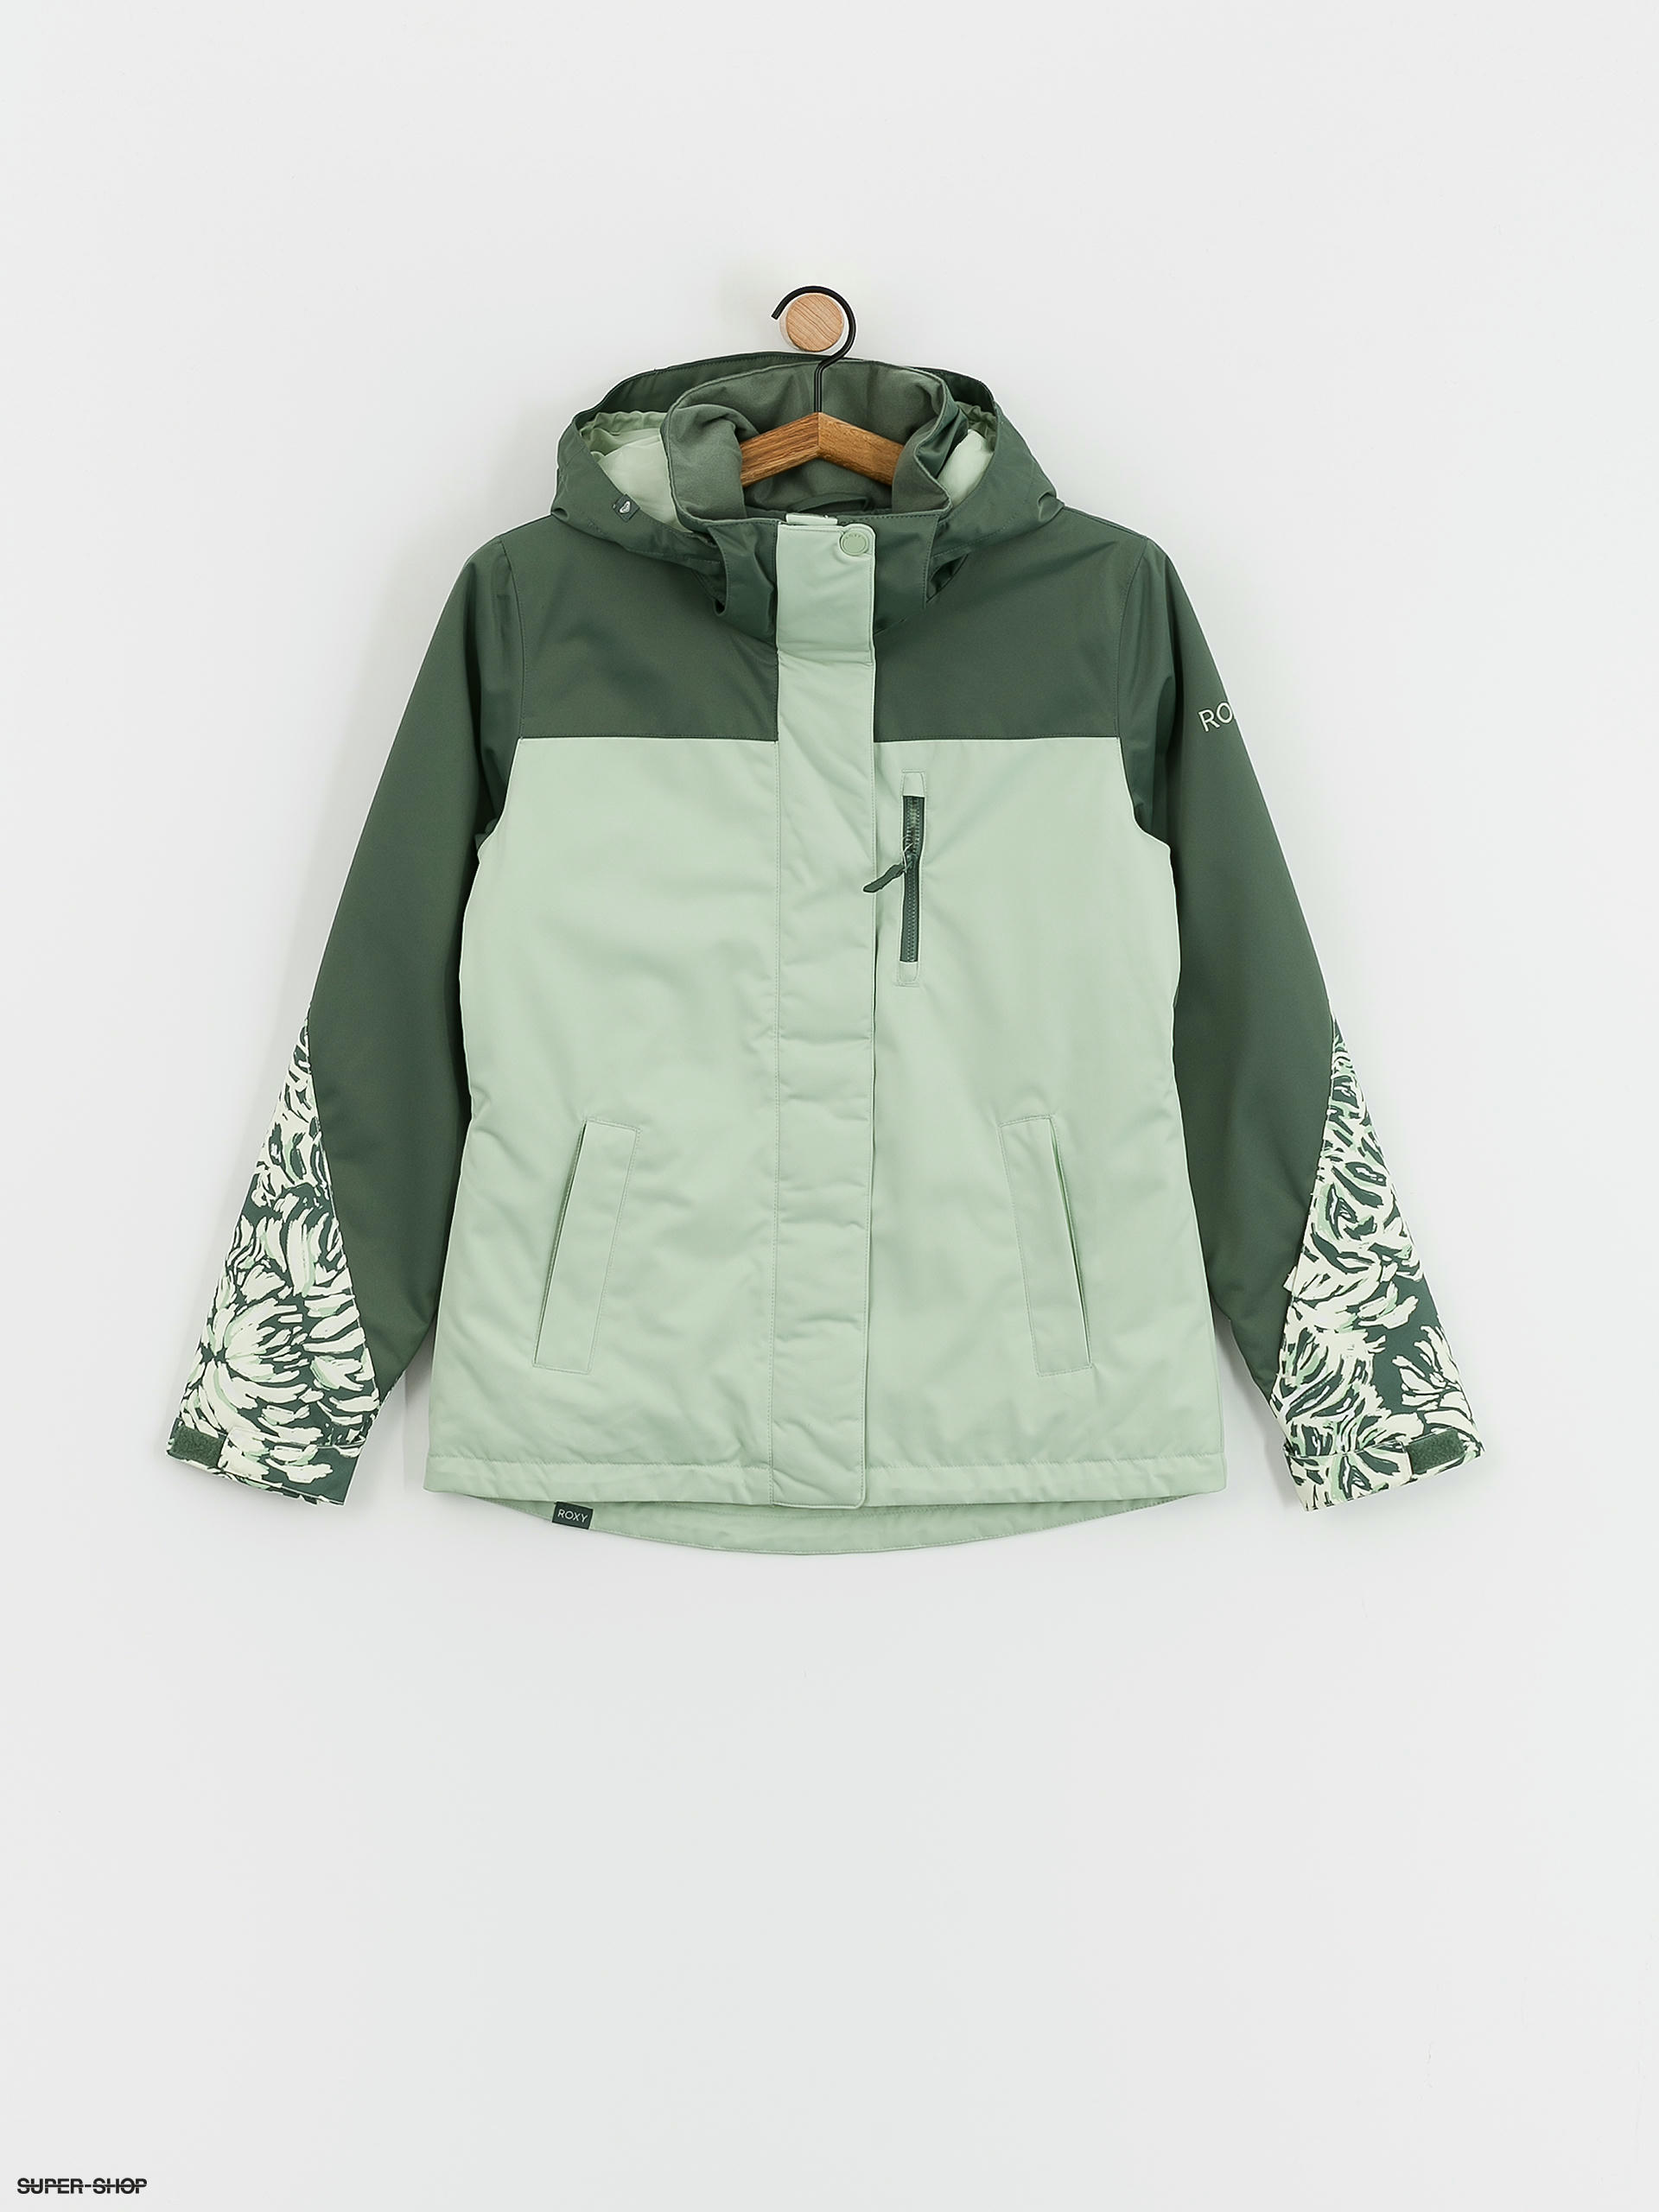 Snowboard Block Jetty Wmn forest jacket (dark Roxy wild)